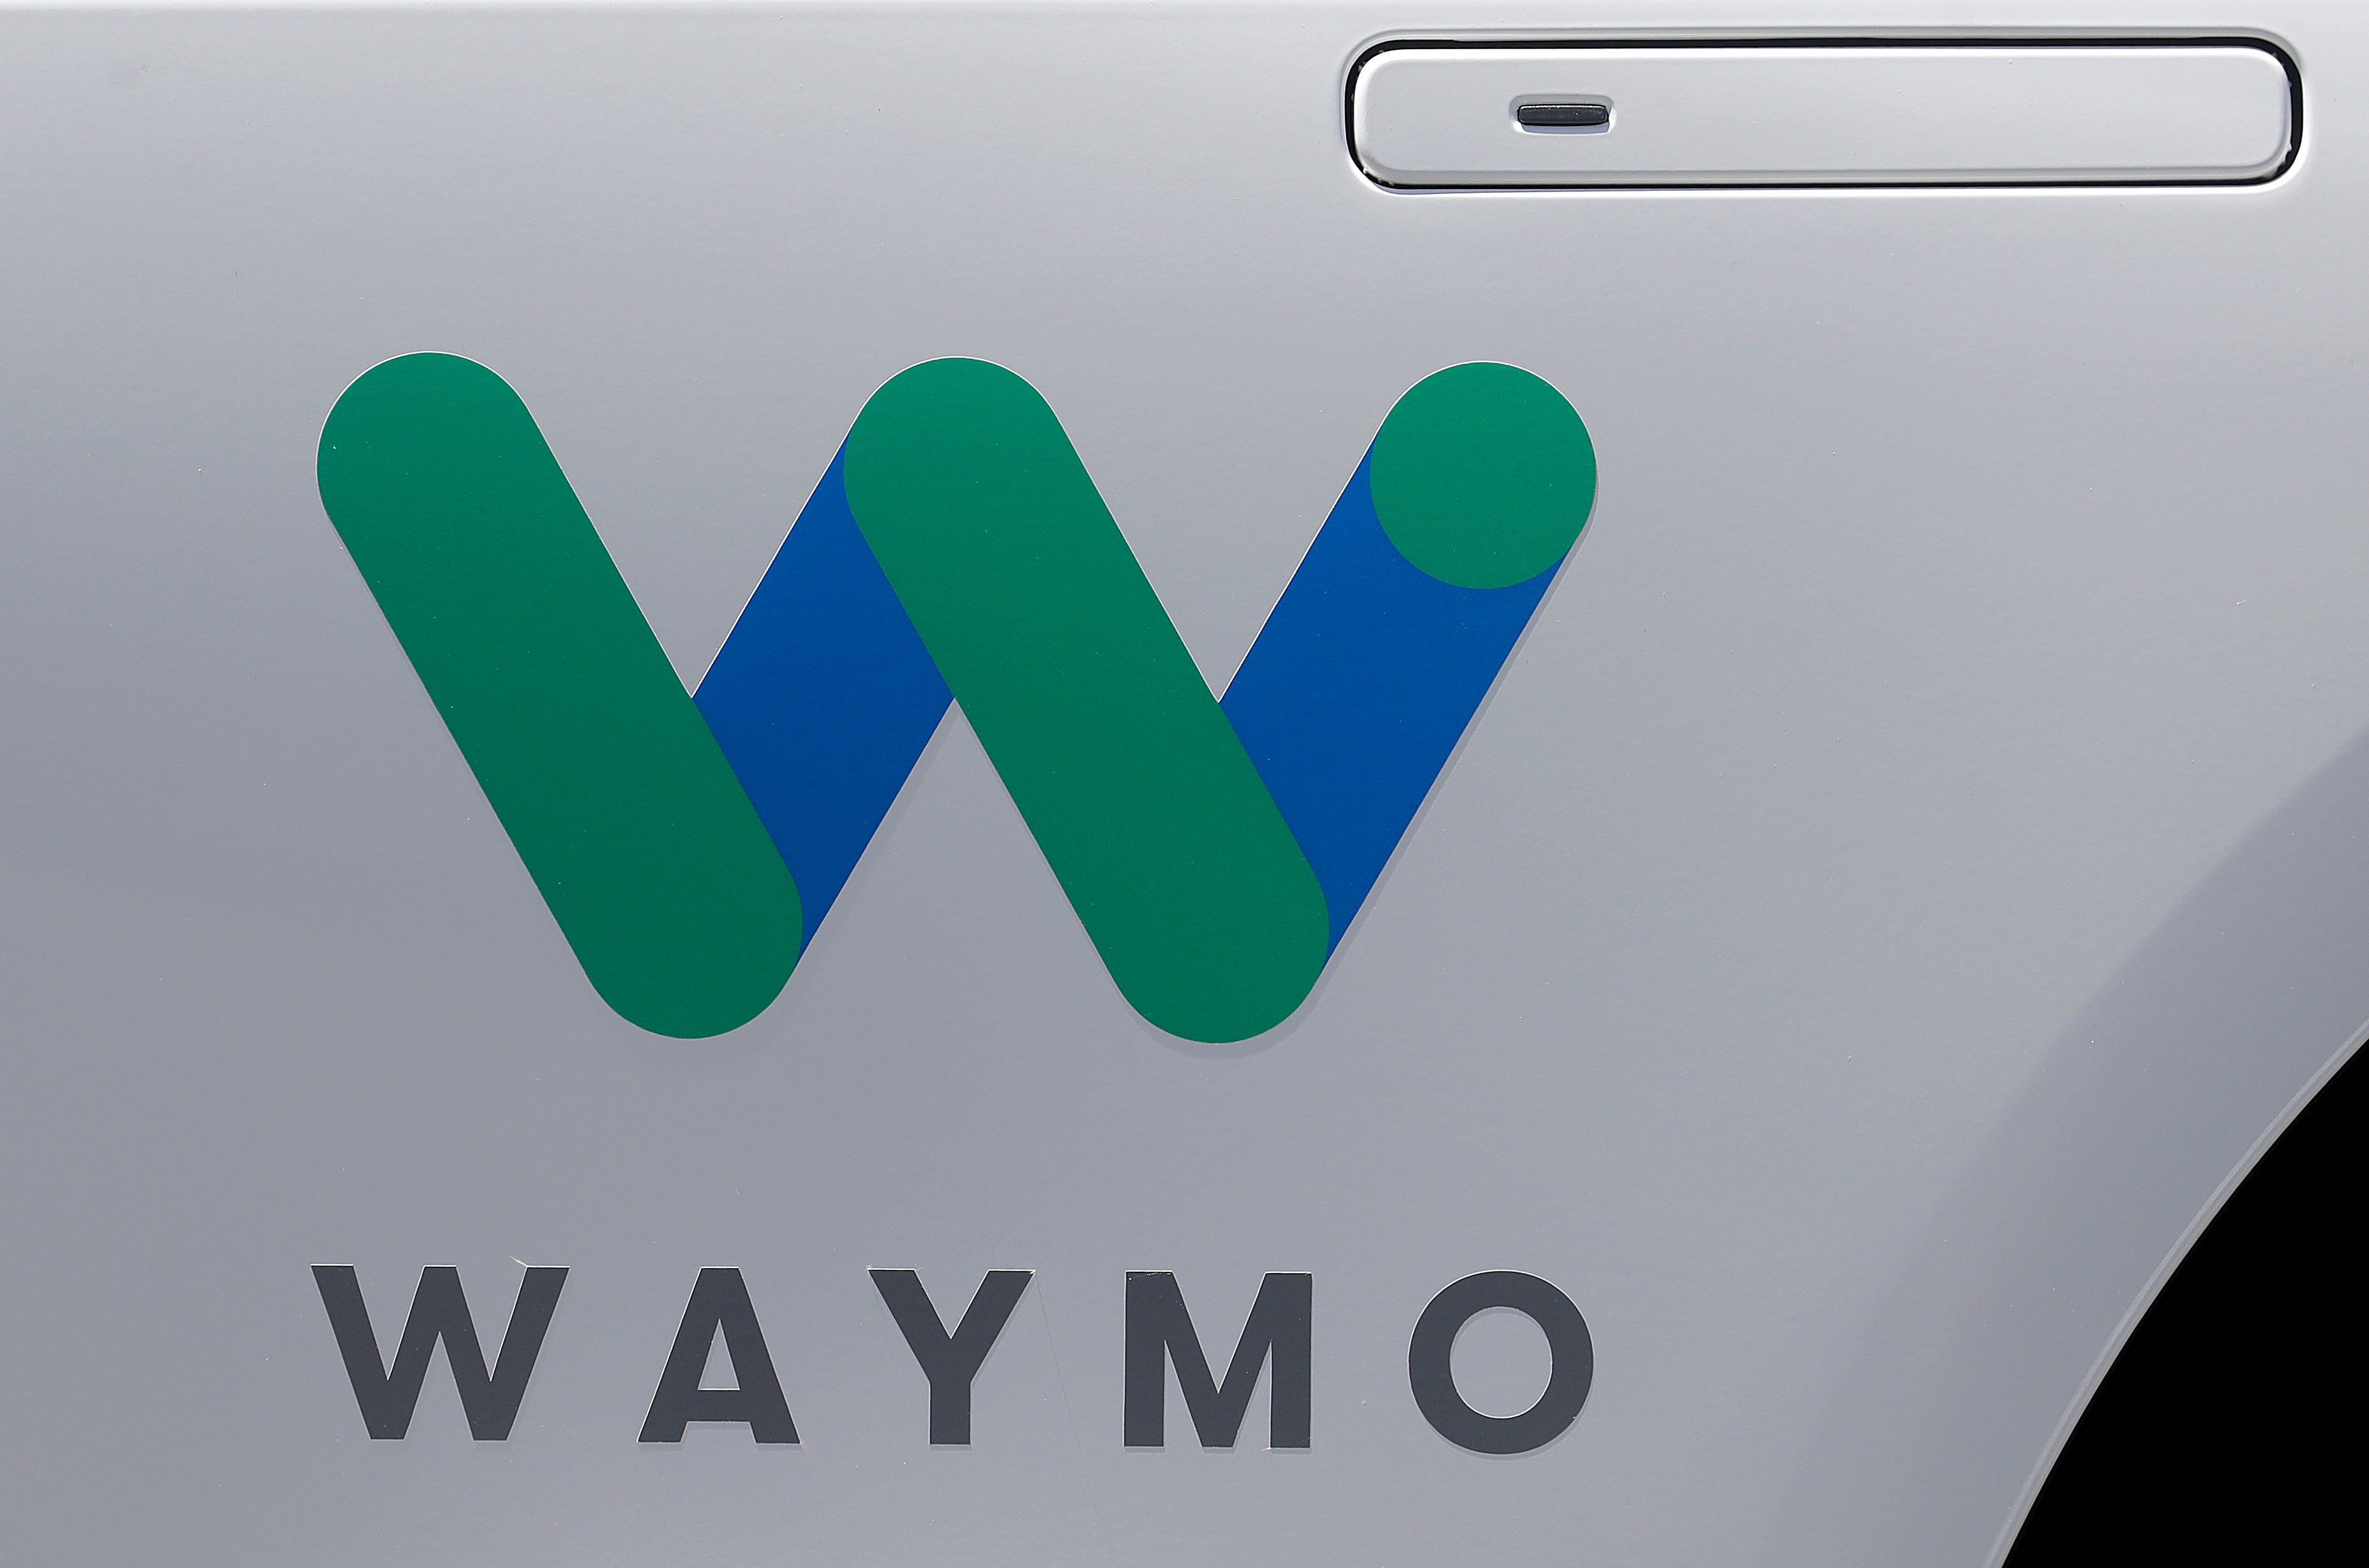 Waymo-Expansion